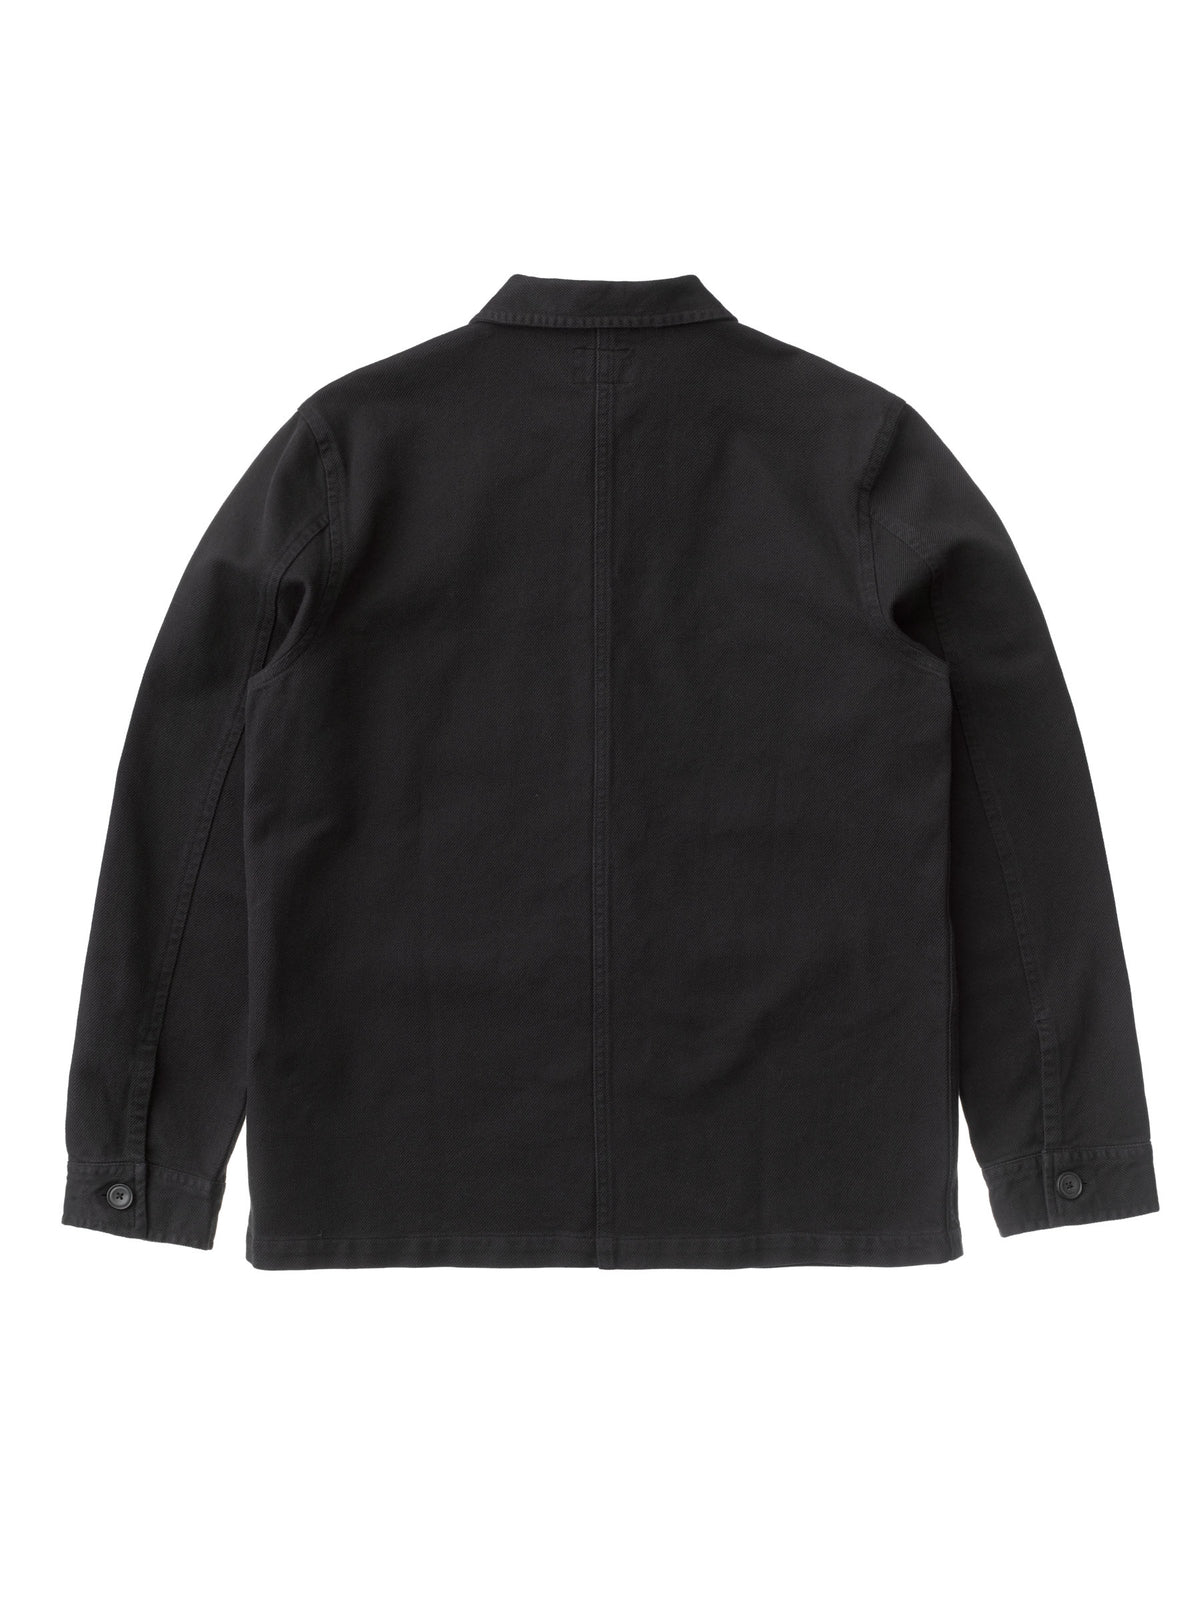 Barney Worker Utility Jacket in Black